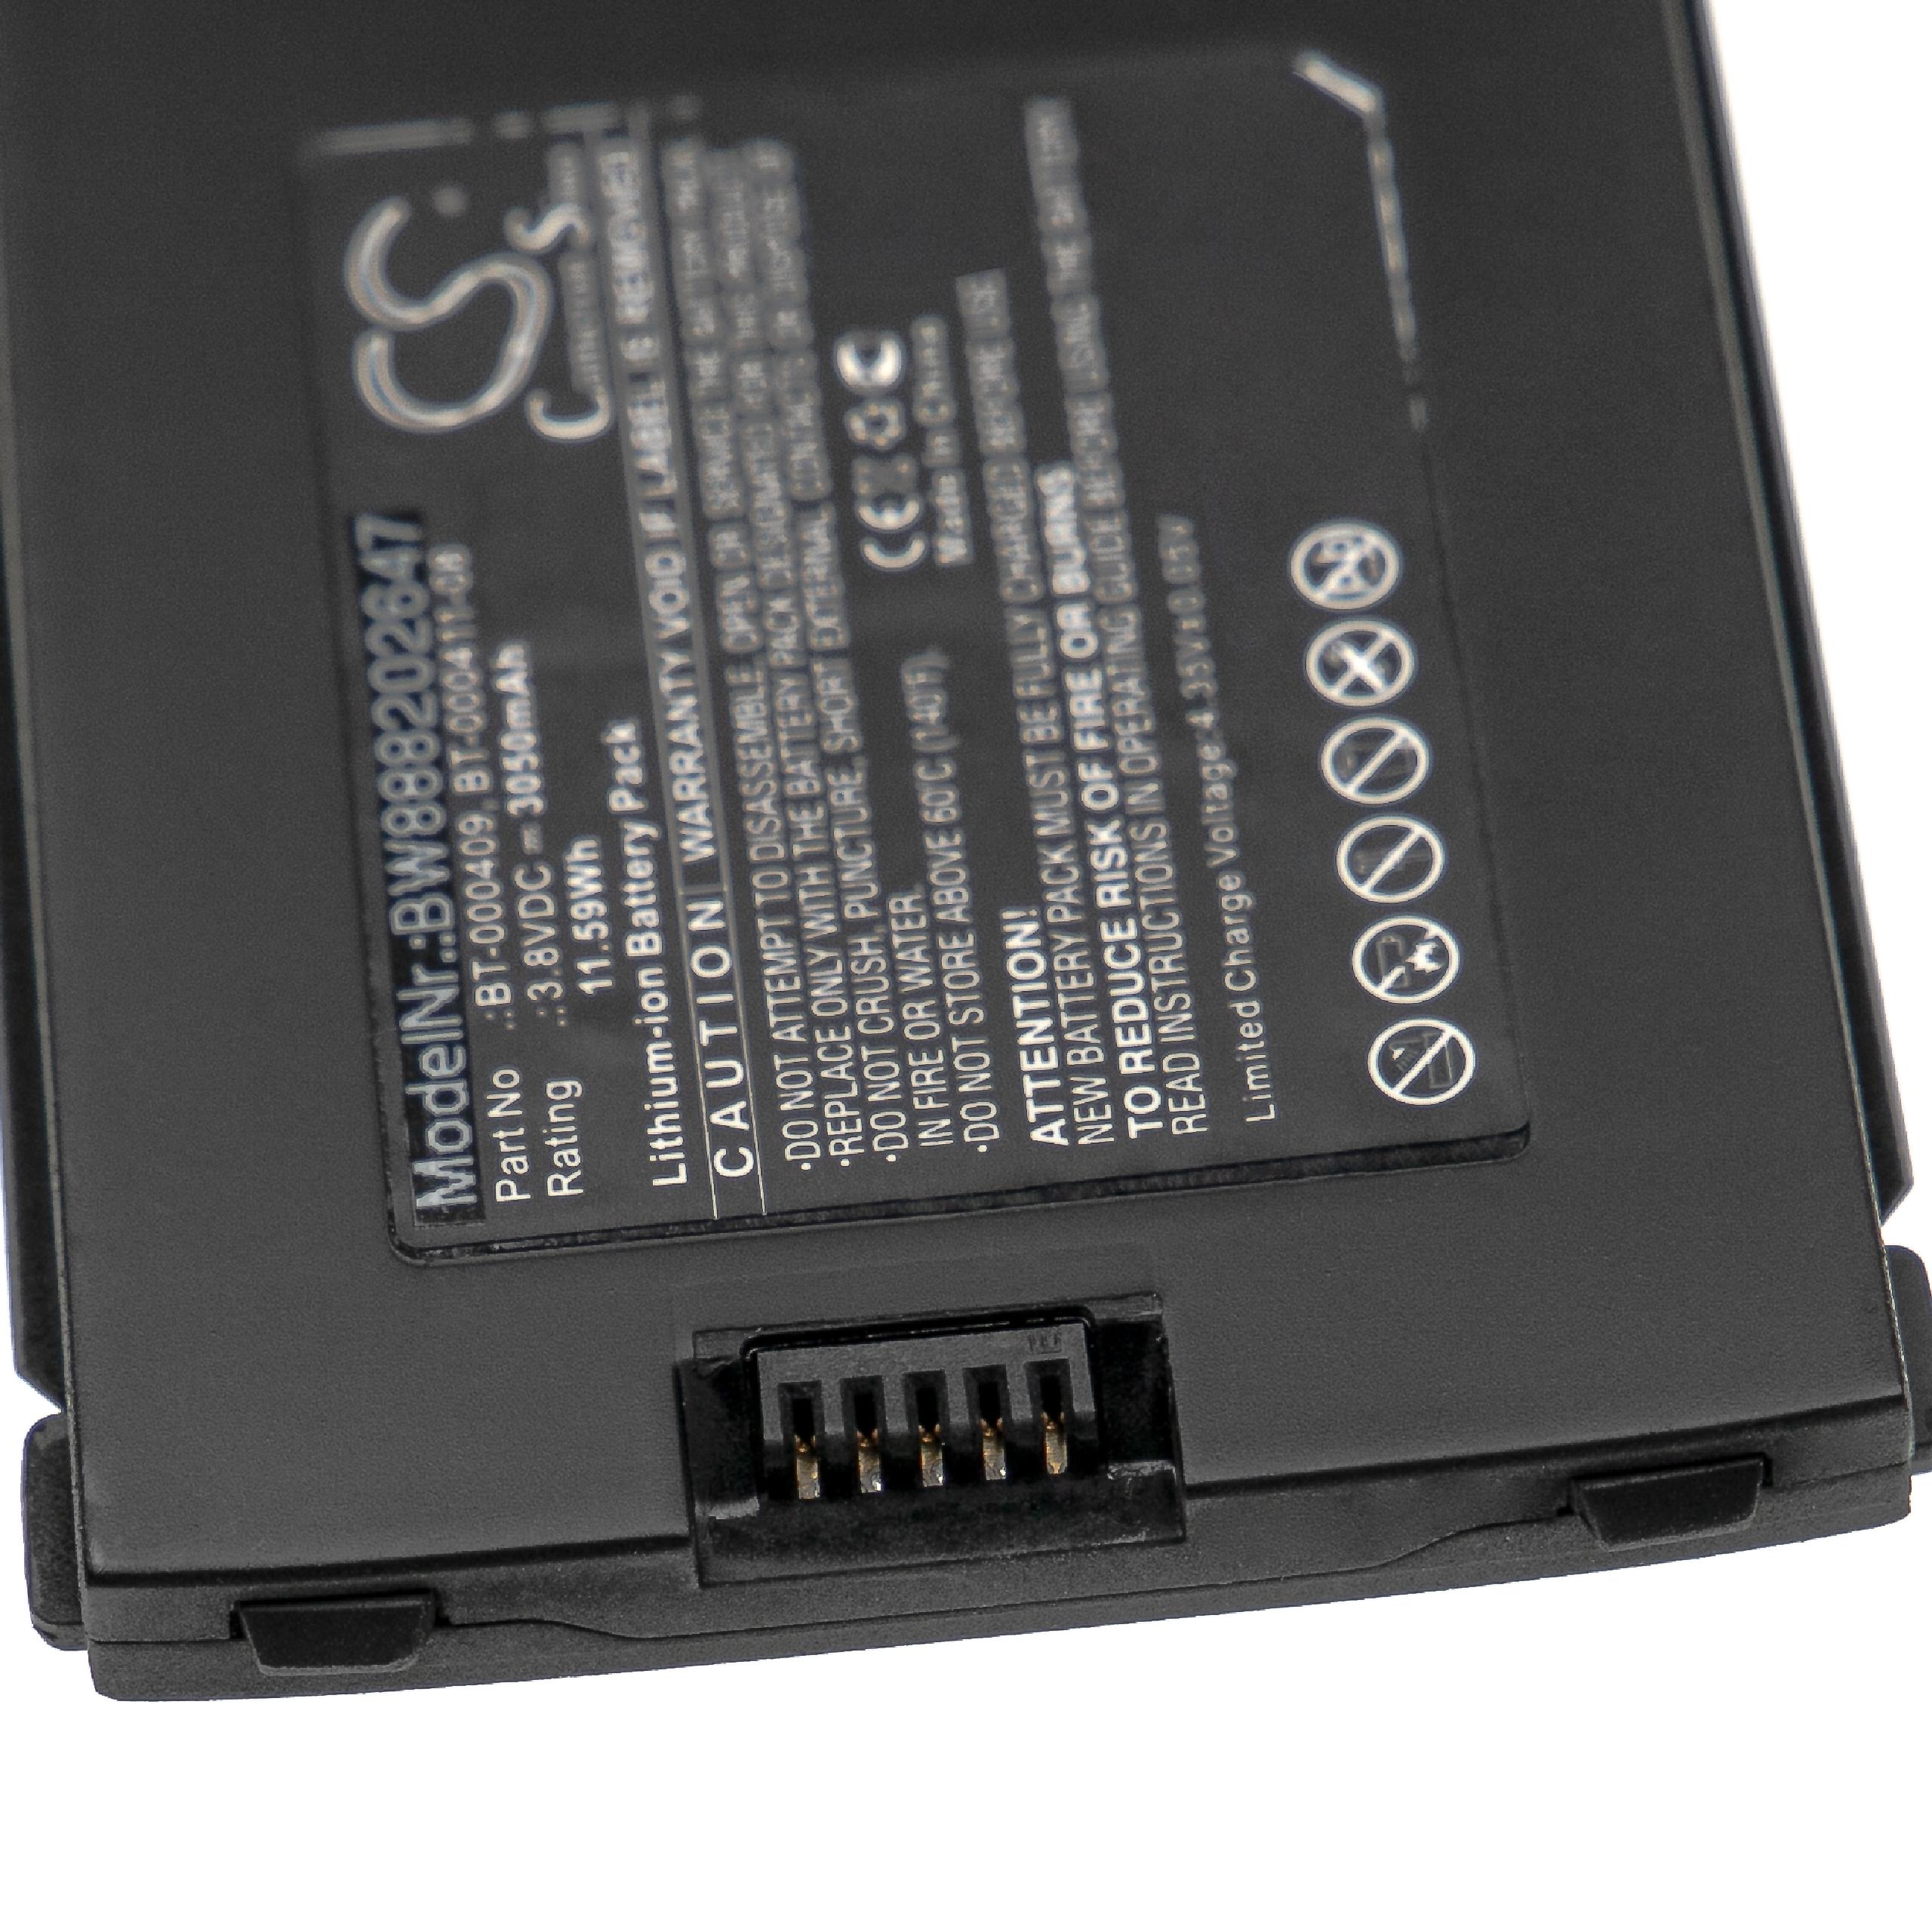 Batteria per computer portatile scanner sostituisce Zebra BT-000409, BT-000411-08 Zebra - 3050mAh 3,8V Li-Ion